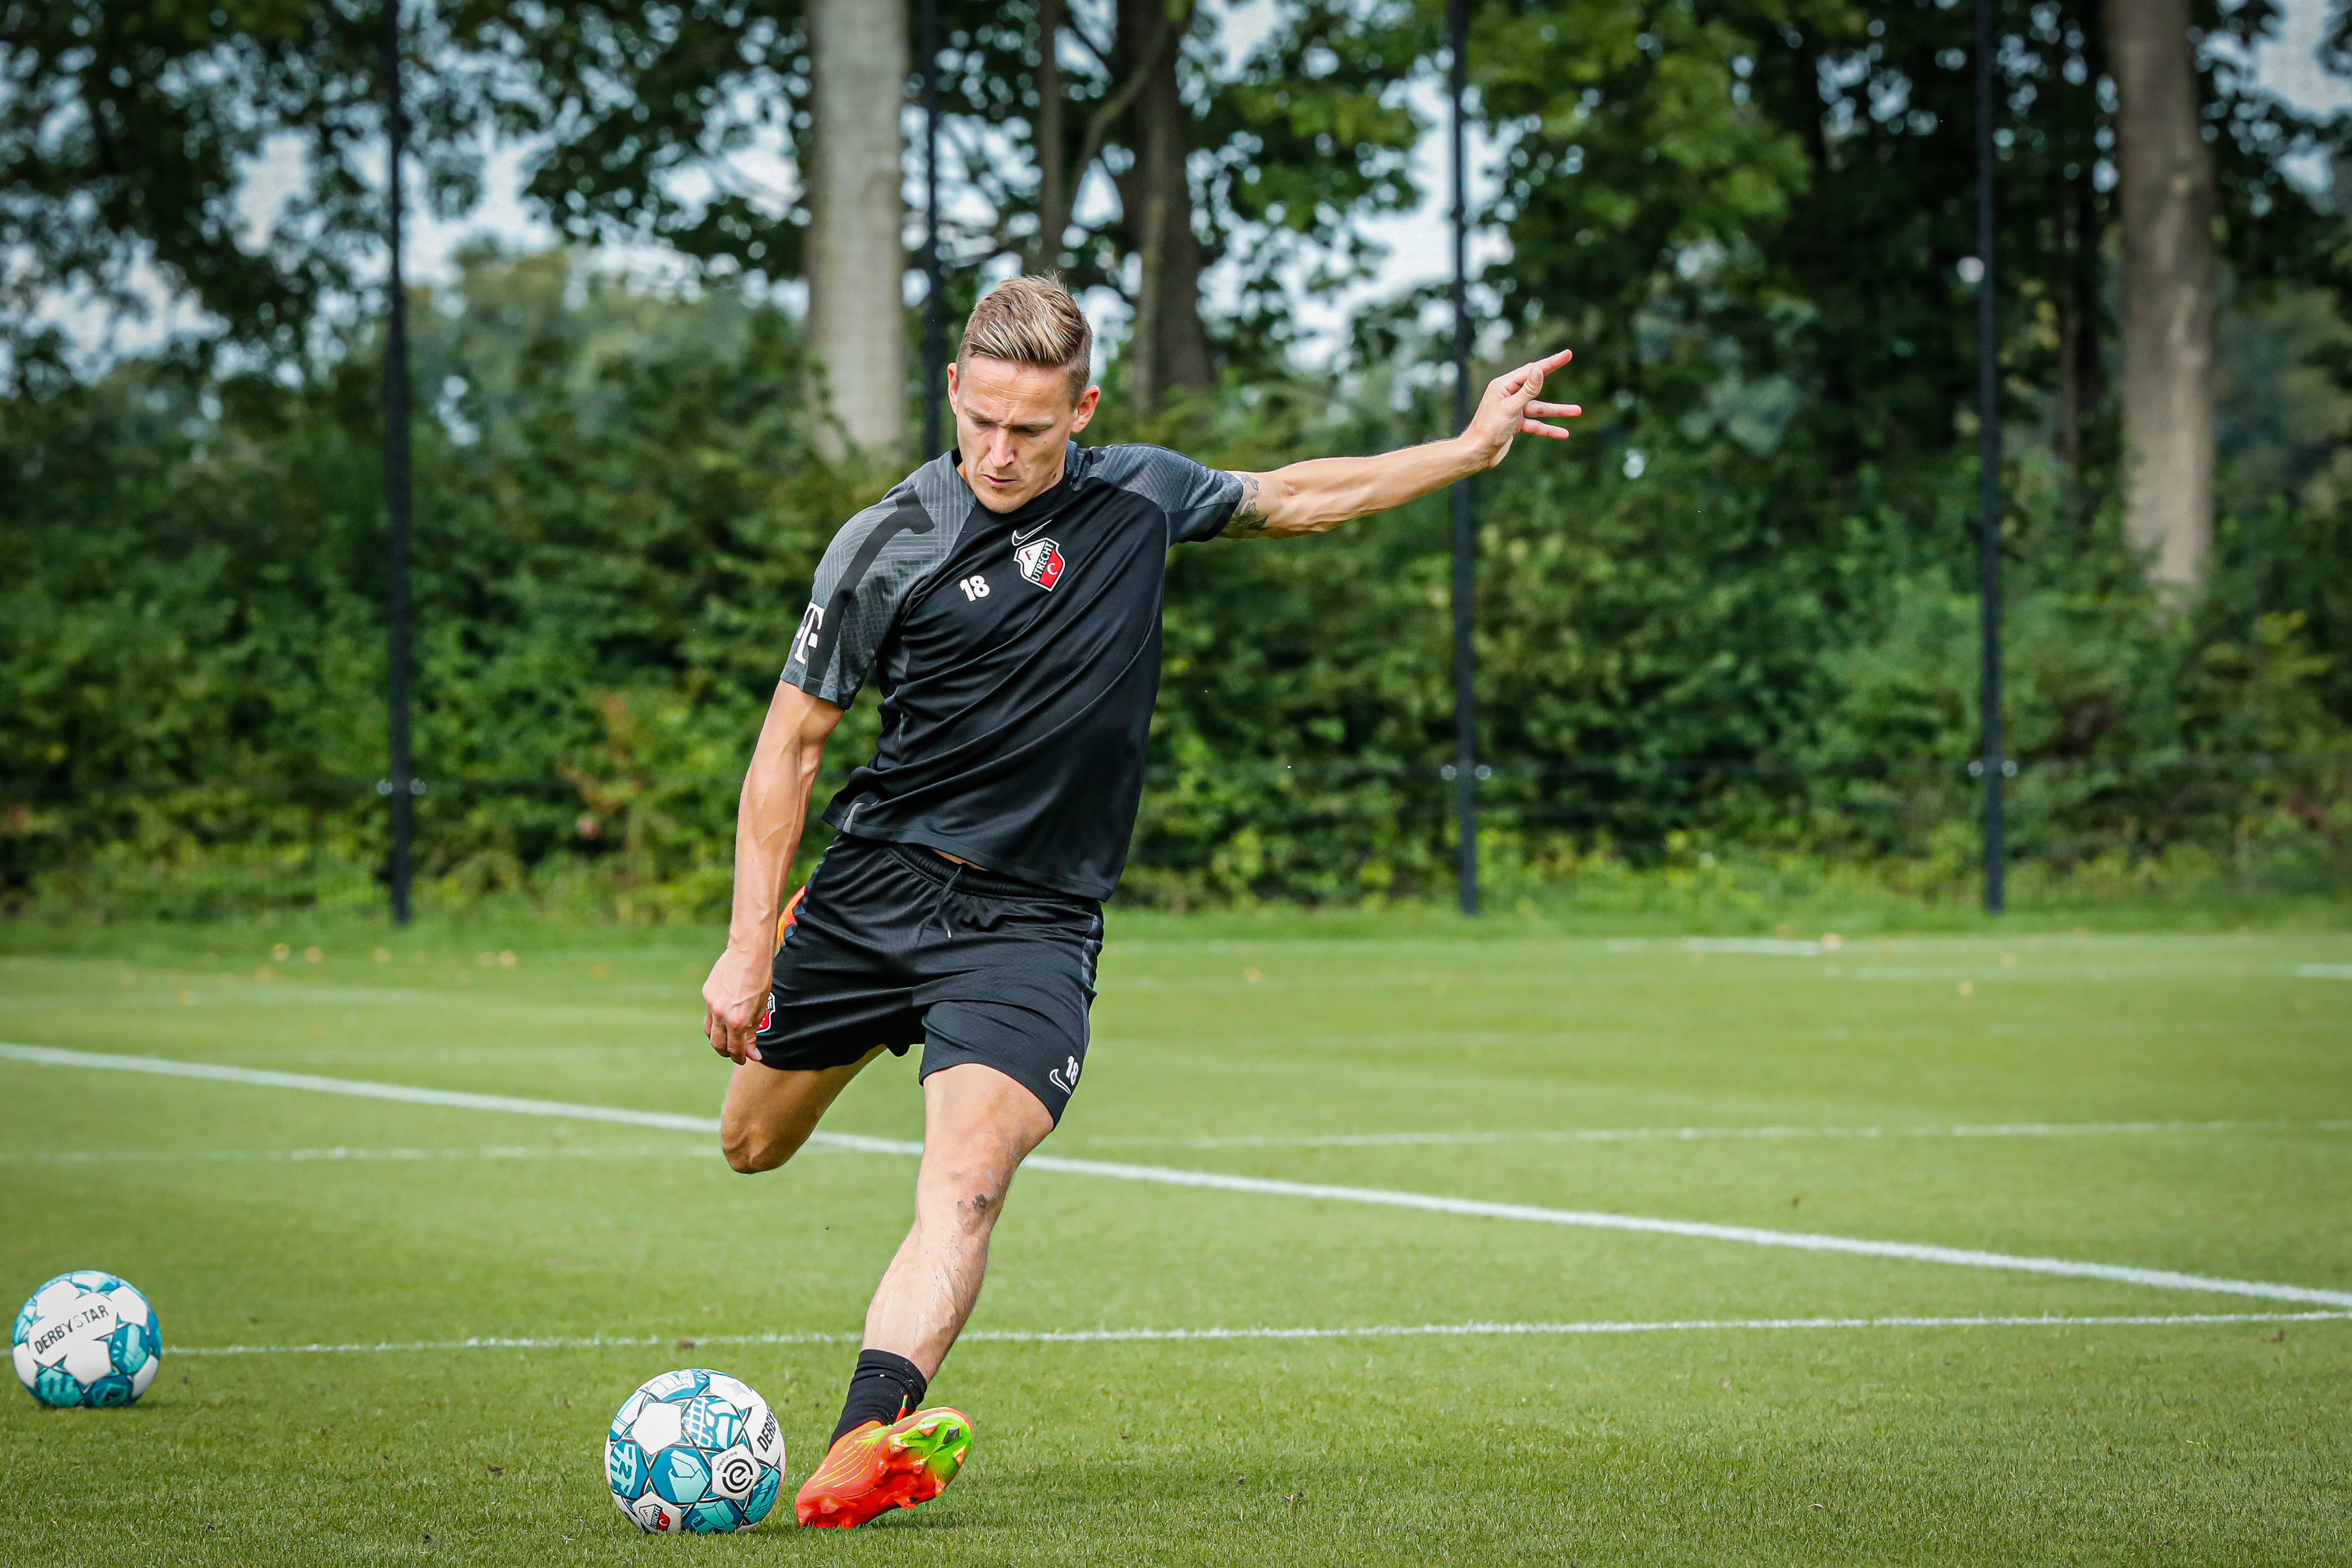 Eerste openbare training FC Utrecht op zaterdag 8 juli